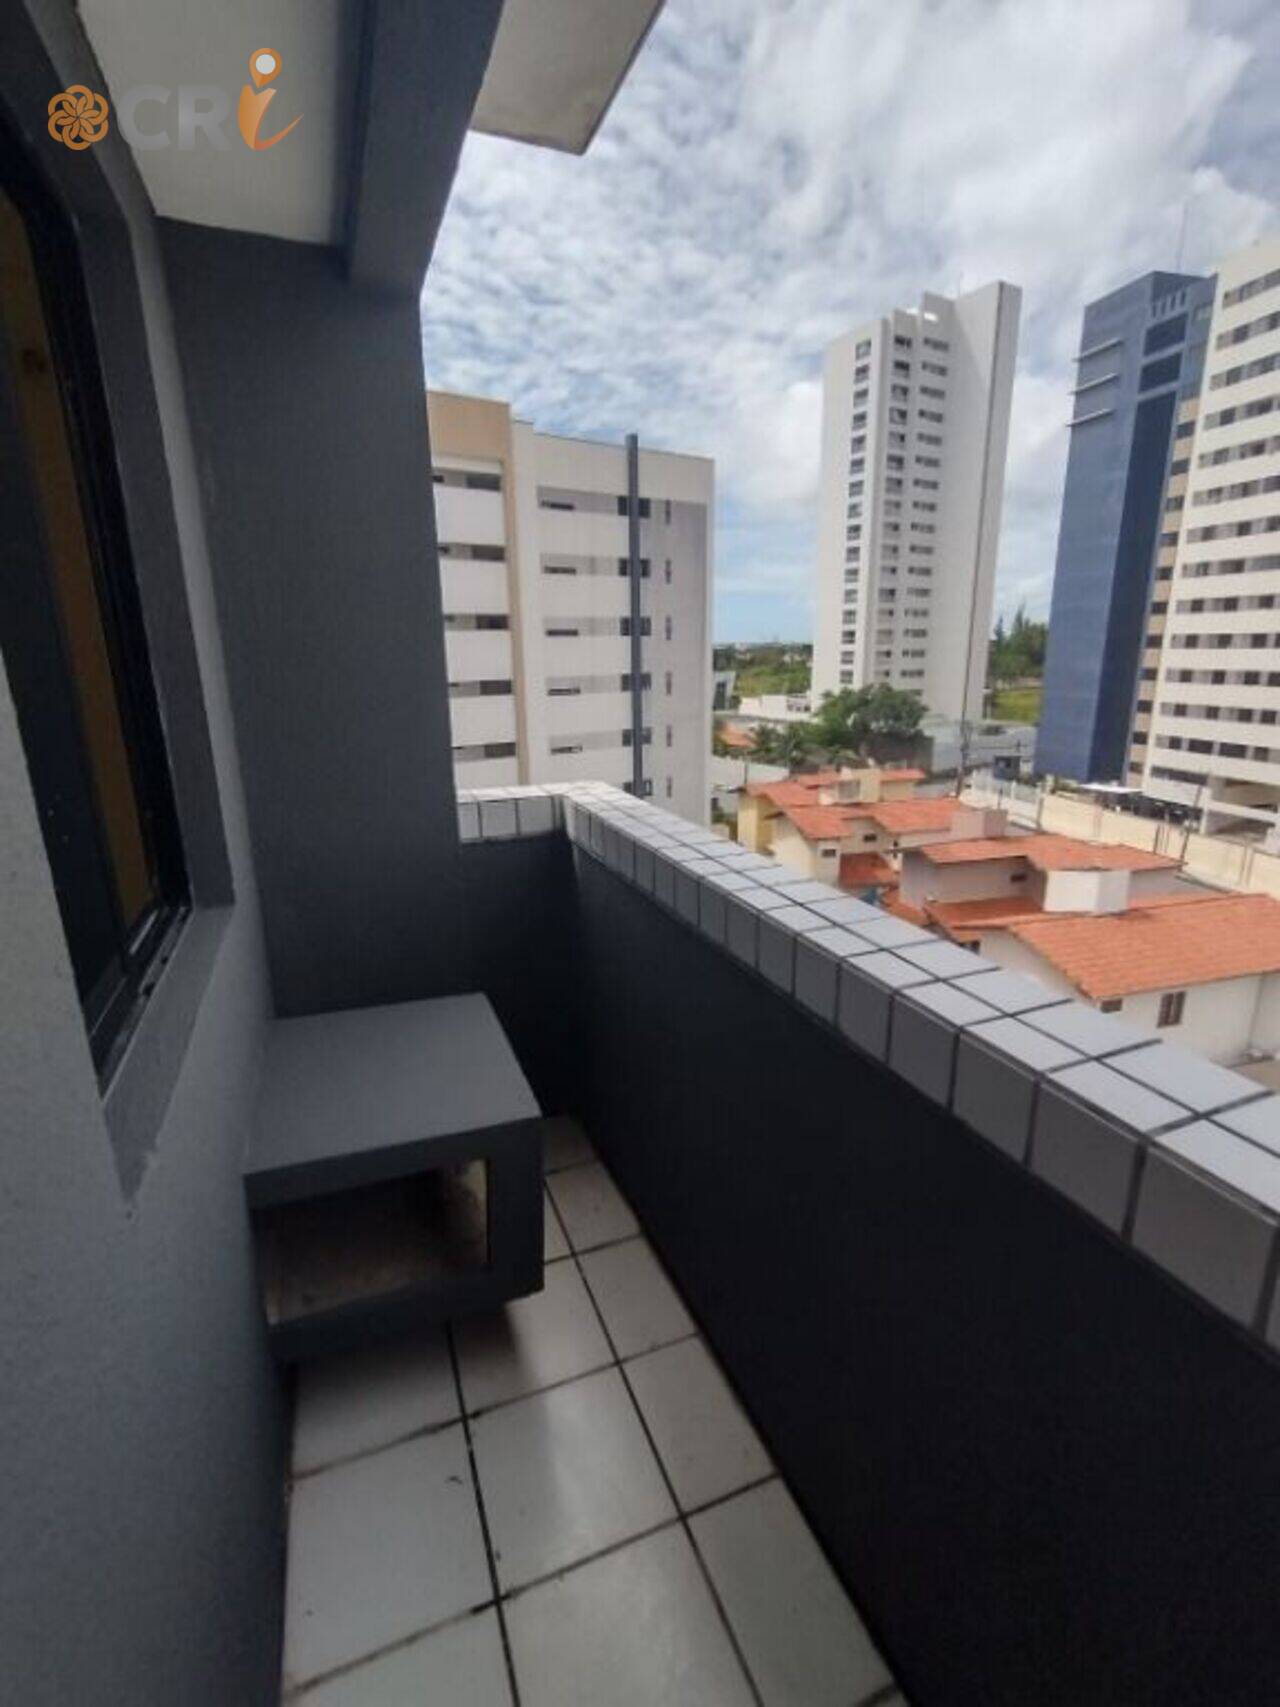 Apartamento Engenheiro Luciano Cavalcante, Fortaleza - CE